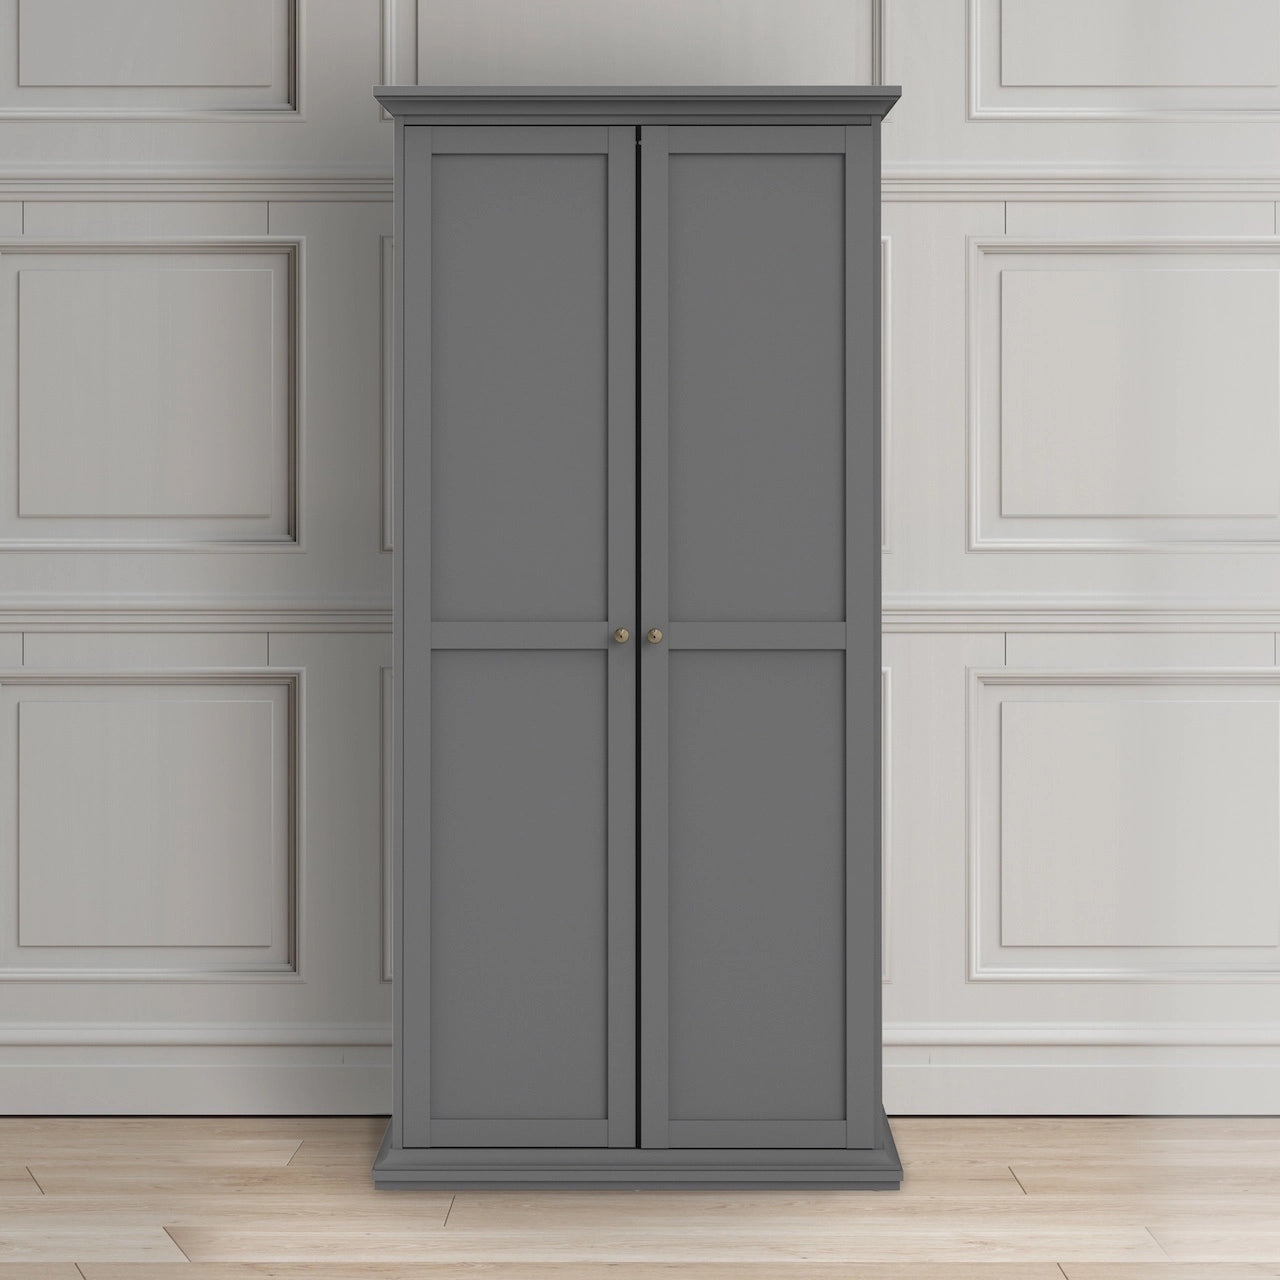 Furniture To Go Paris Wardrobe with 2 Doors in Matt Grey